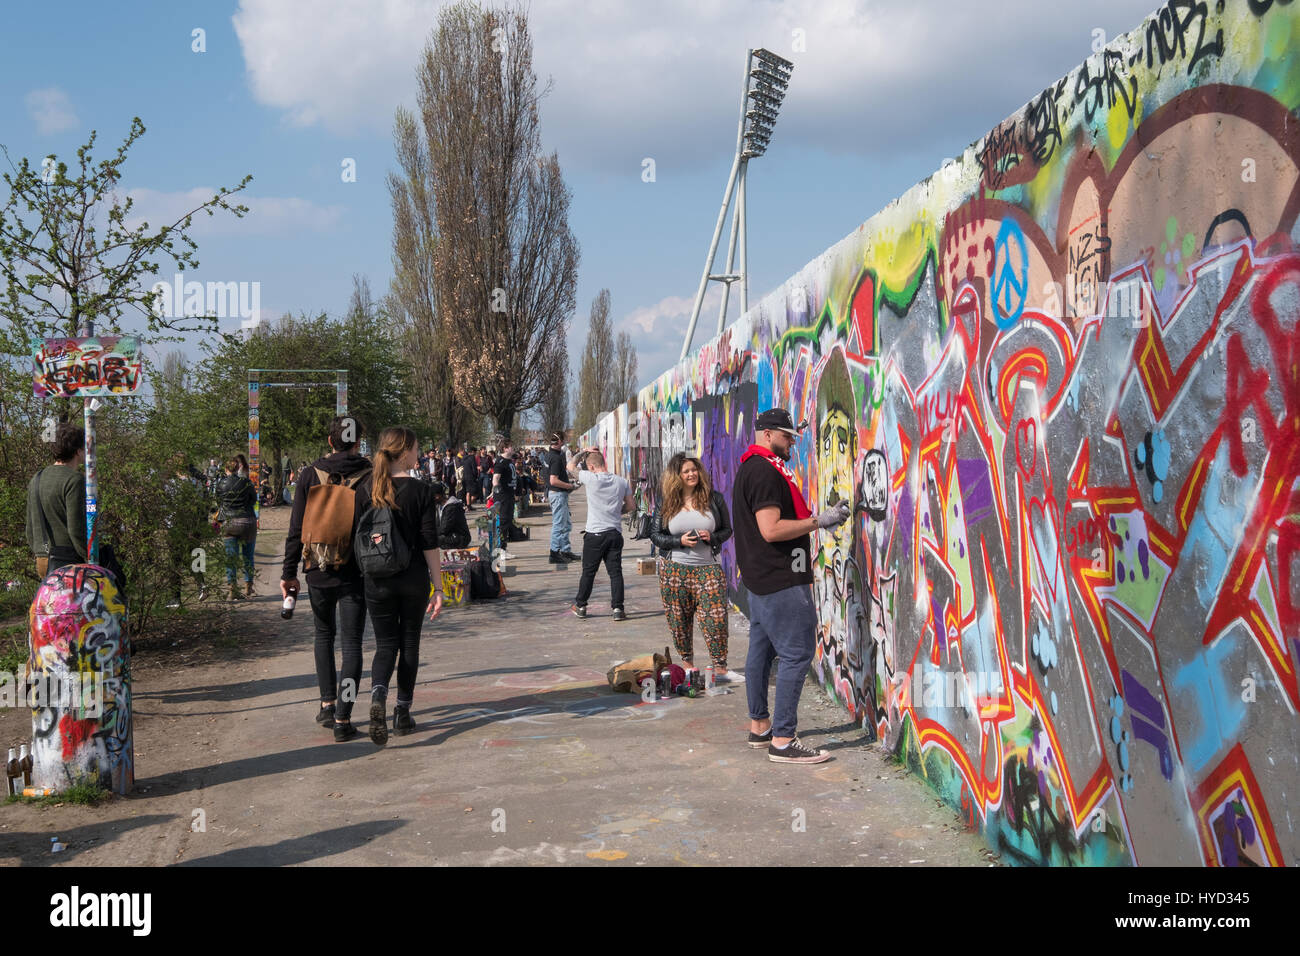 Berlino, Germania - 02 aprile 2017: muro di graffiti al parco (Mauerpark) di Berlino, Germania. Foto Stock